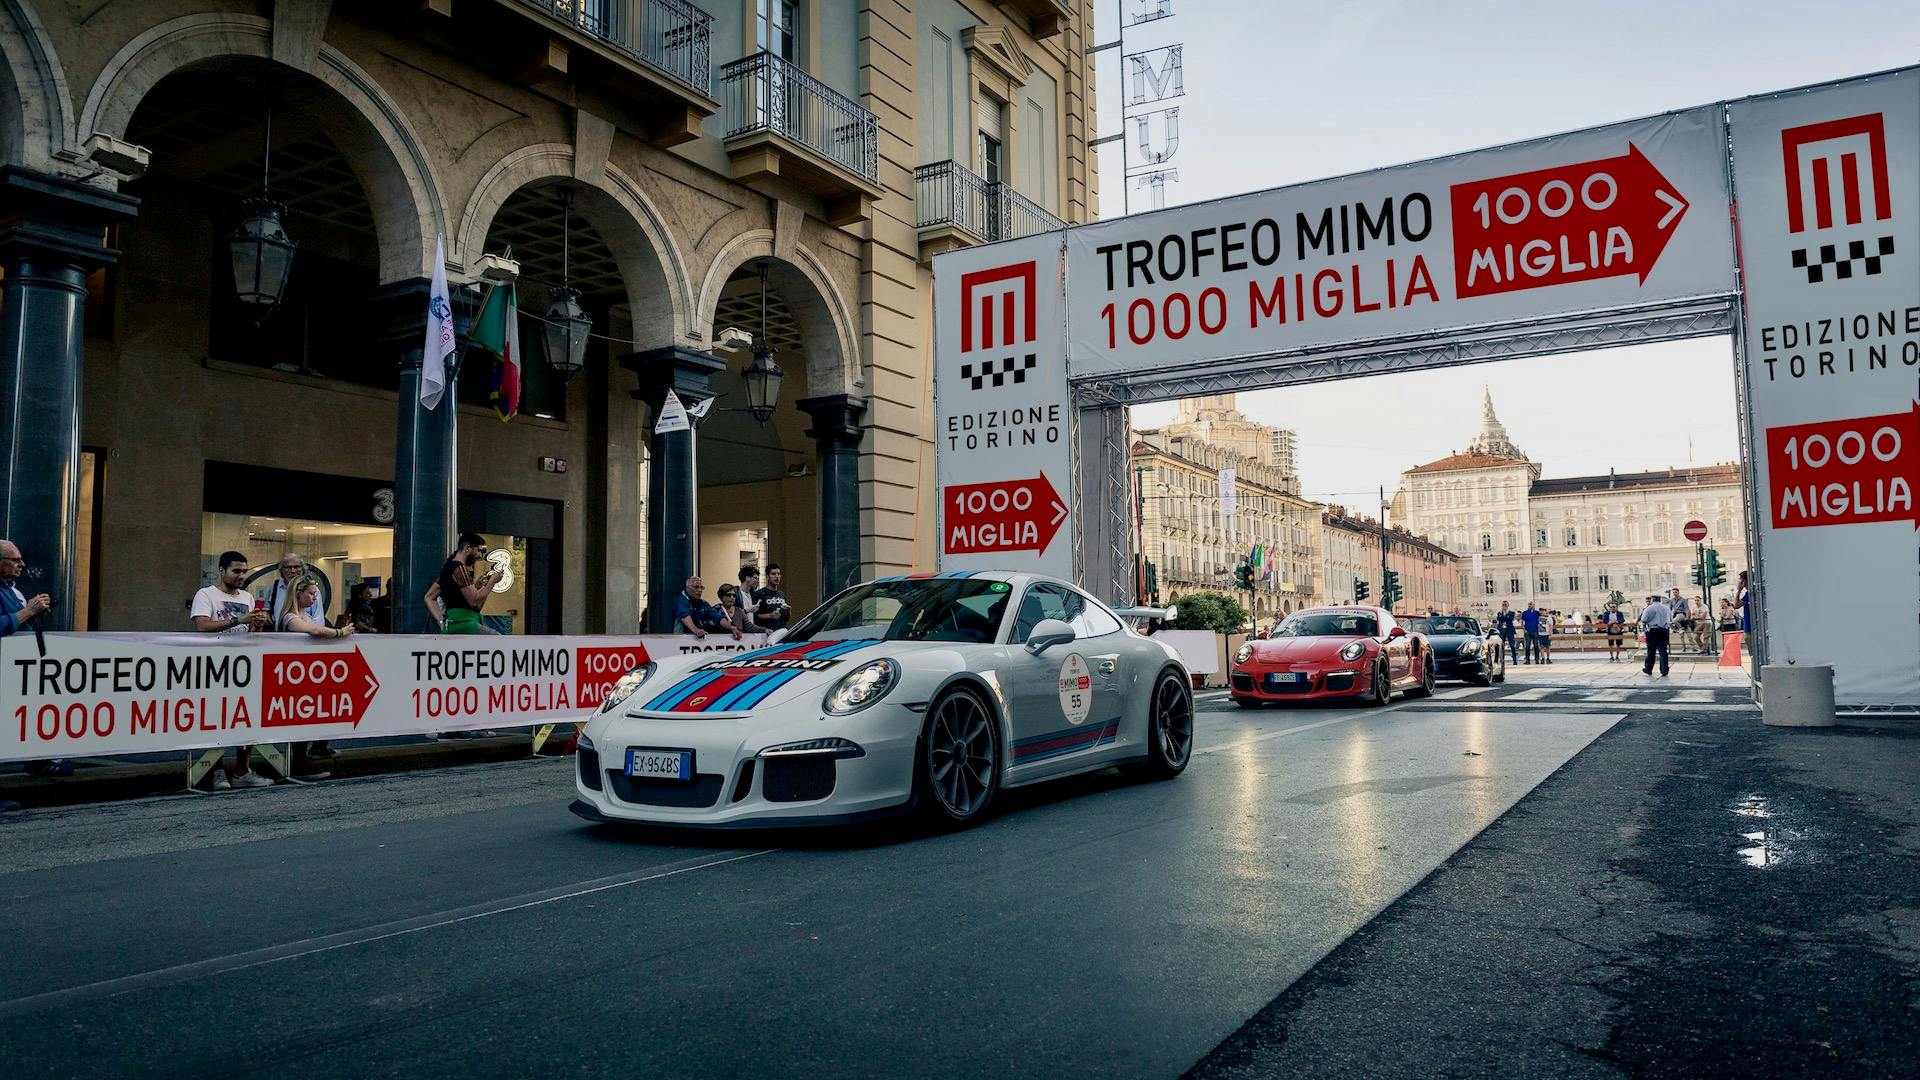 Trofeo MIMO 1000 Miglia 2022